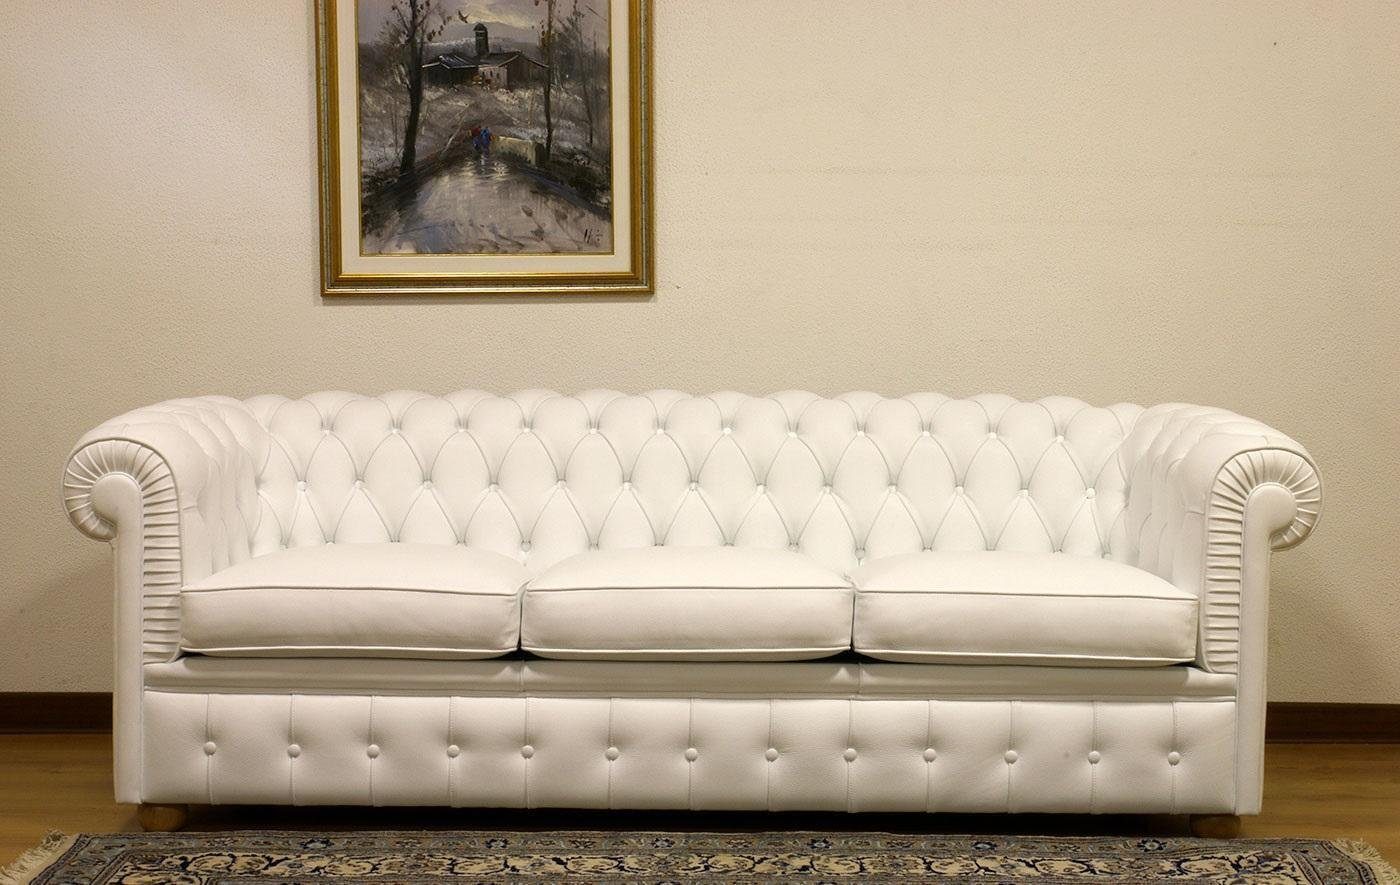 JVmoebel Chesterfield-Sofa Luxus Chesterfield Sofagarnitur Europe Sofort, Leder 100% Leder 3-Sitzer Couch Made in